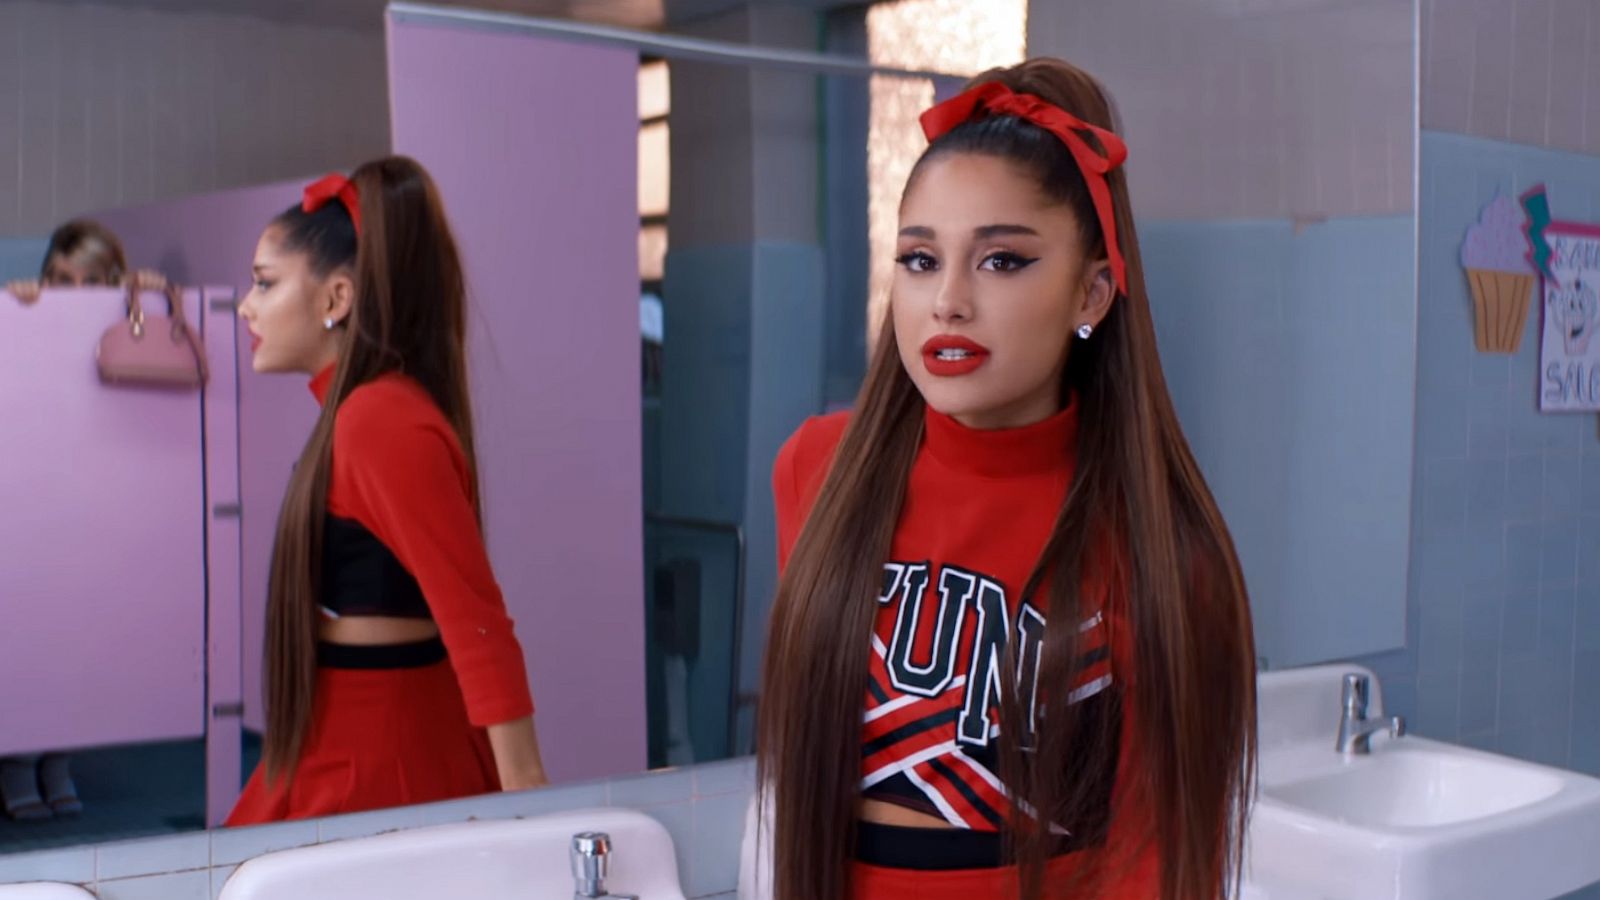 Album Review: Ariana Grande's 'Thank U, Next